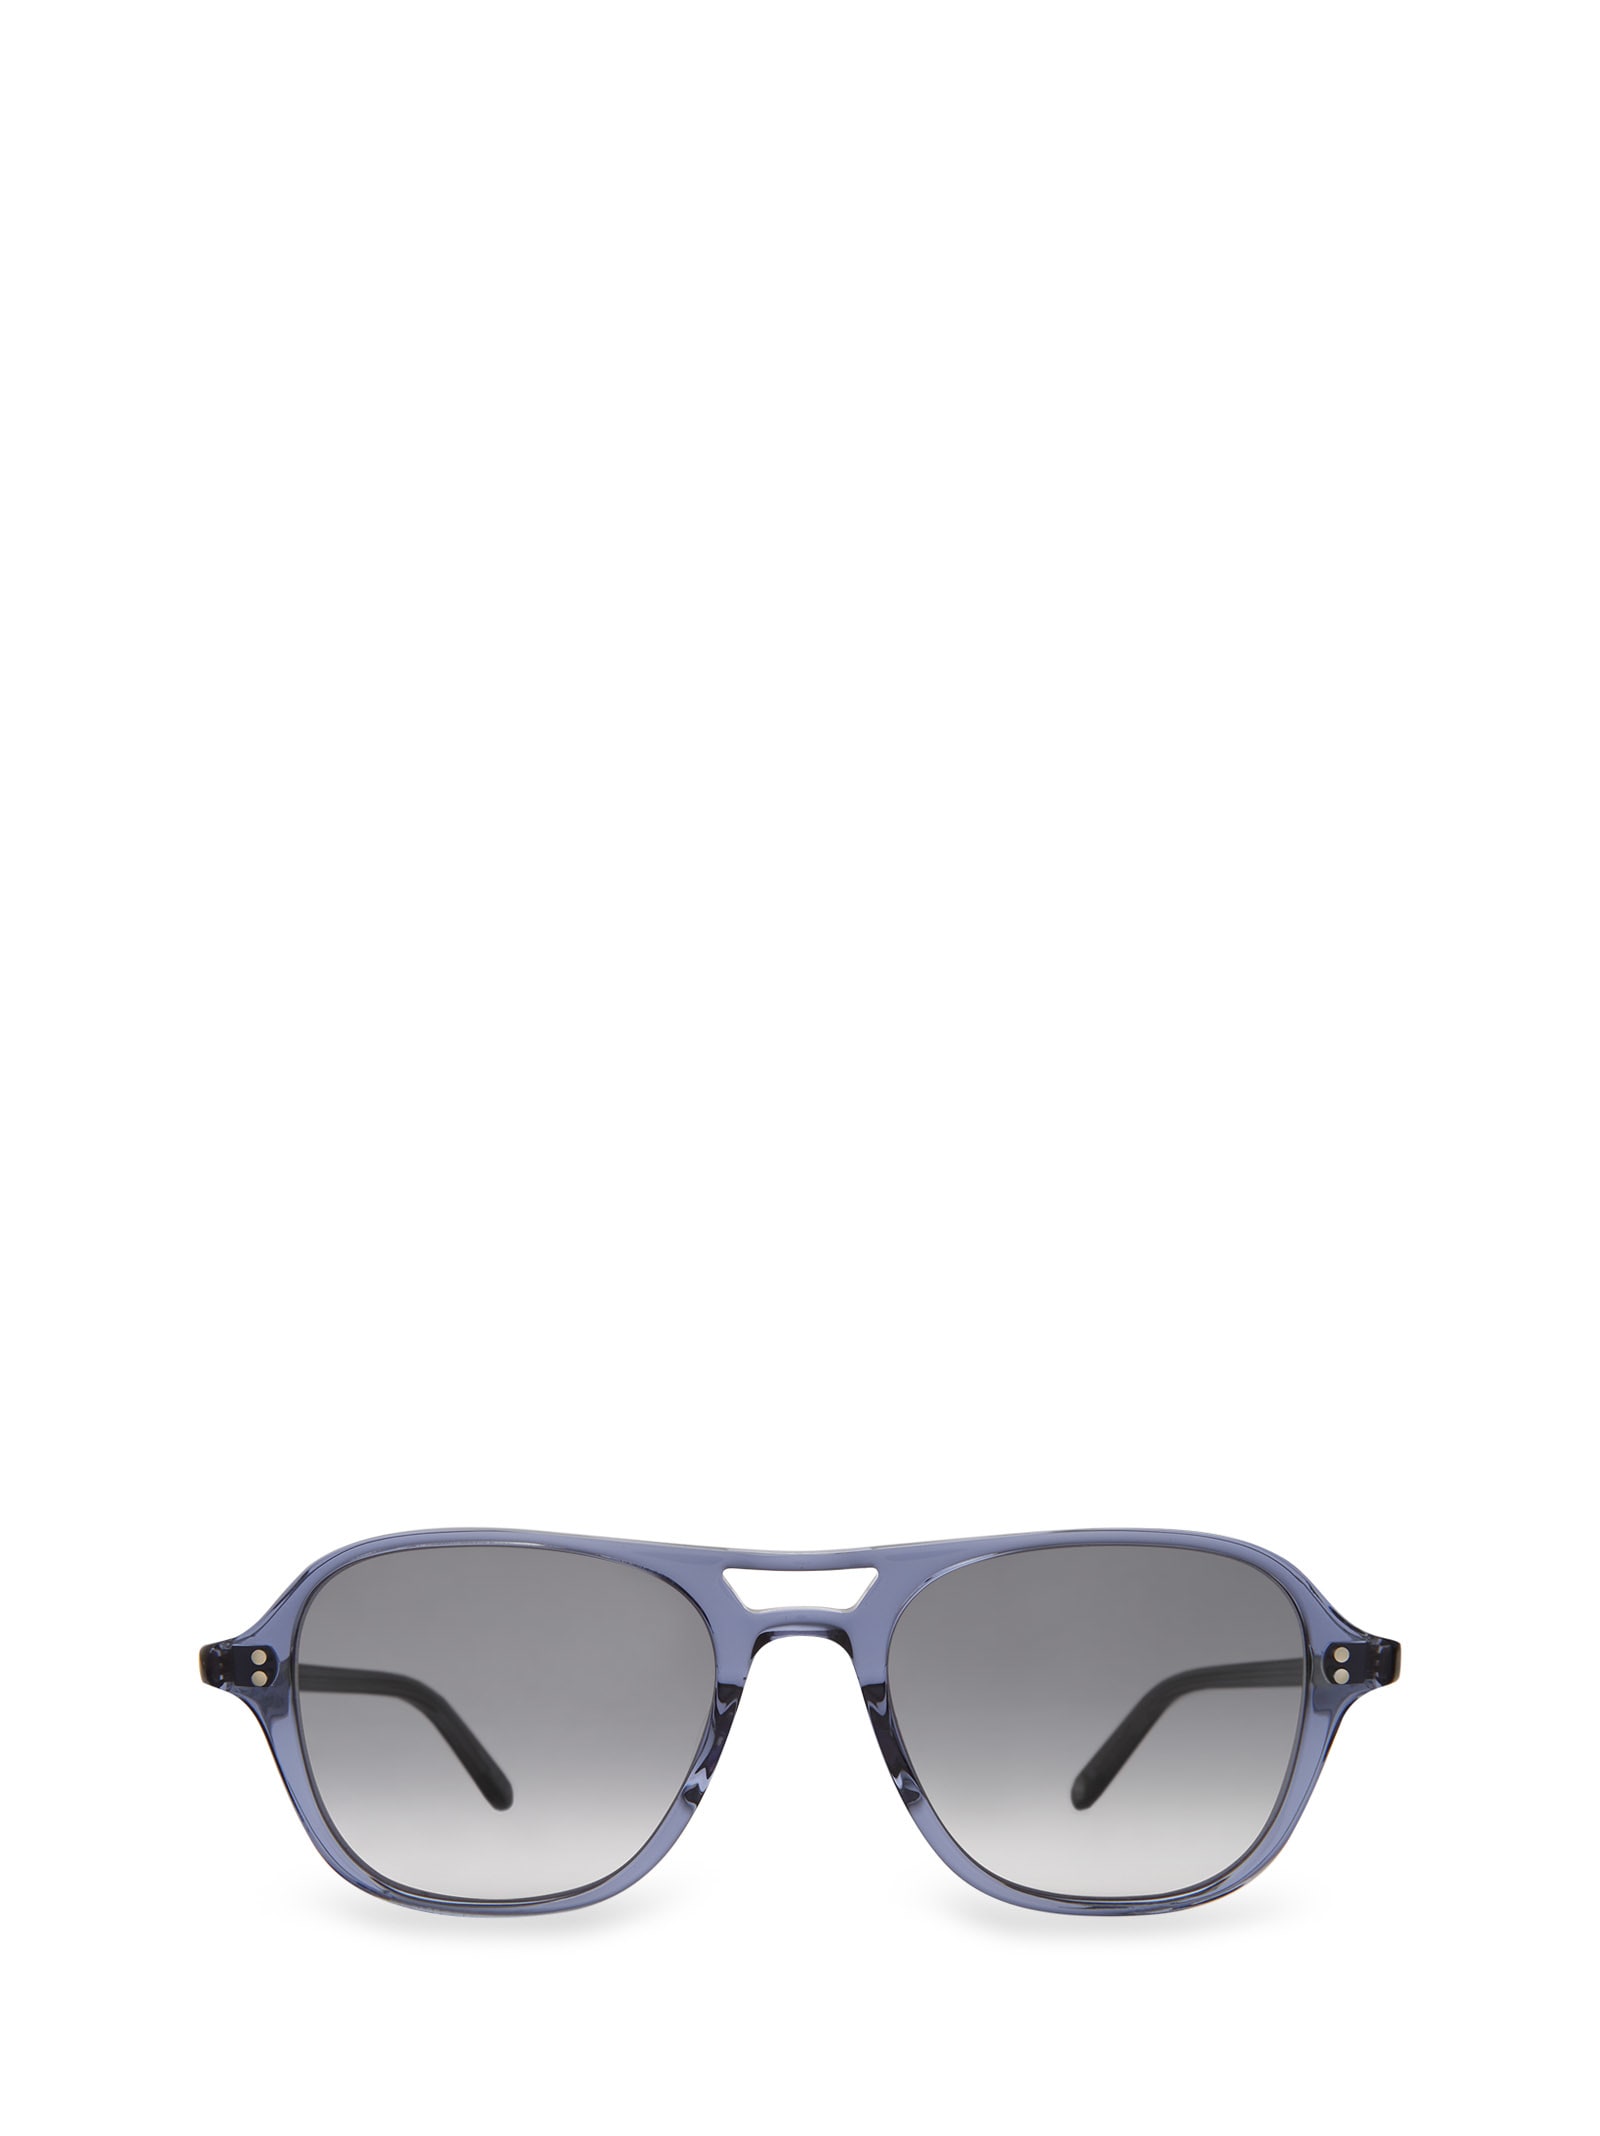 Doc Sun Pacific Blue Sunglasses